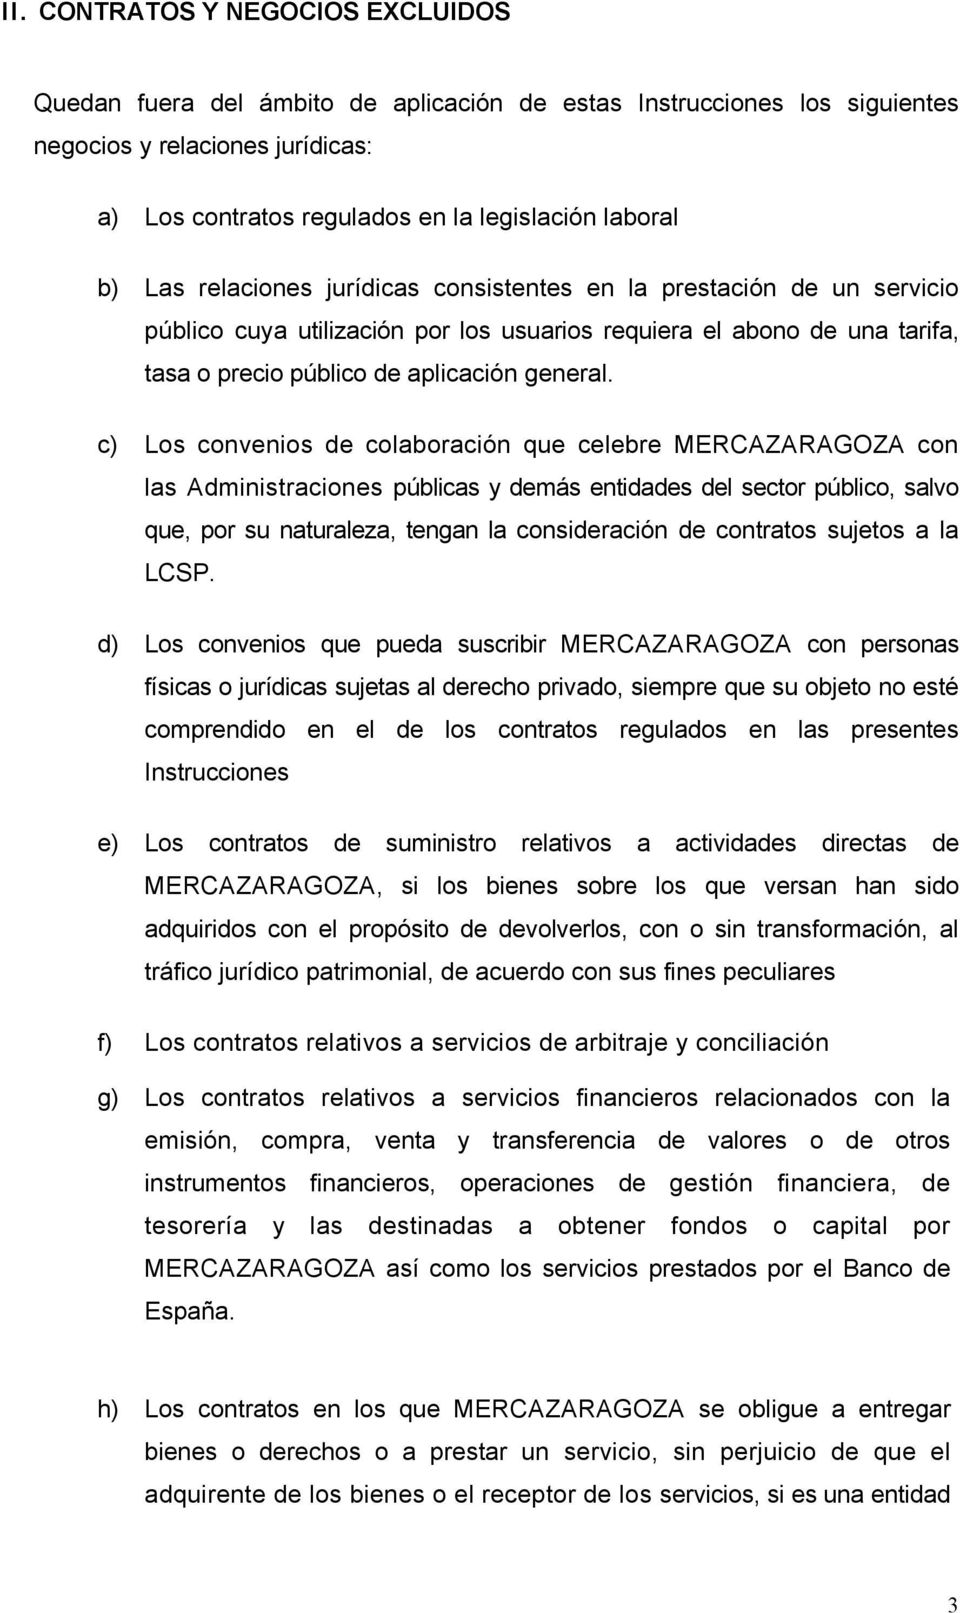 c) Los convenios de colaboración que celebre MERCAZARAGOZA con las Administraciones públicas y demás entidades del sector público, salvo que, por su naturaleza, tengan la consideración de contratos